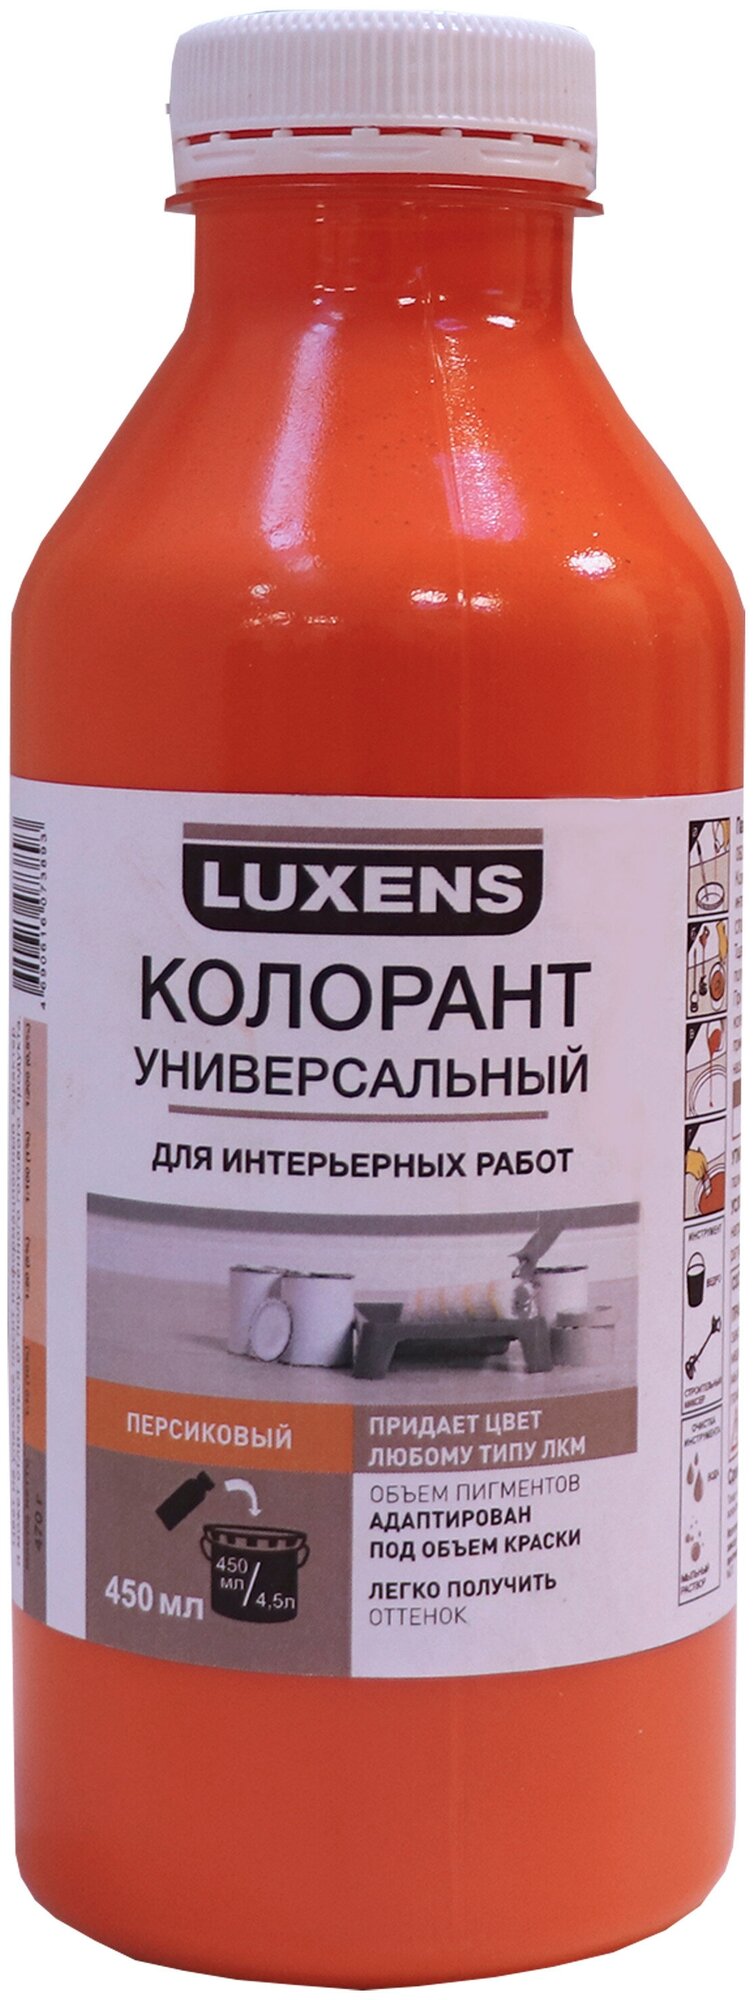 Колорант Luxens 0.45 л цвет персиковый